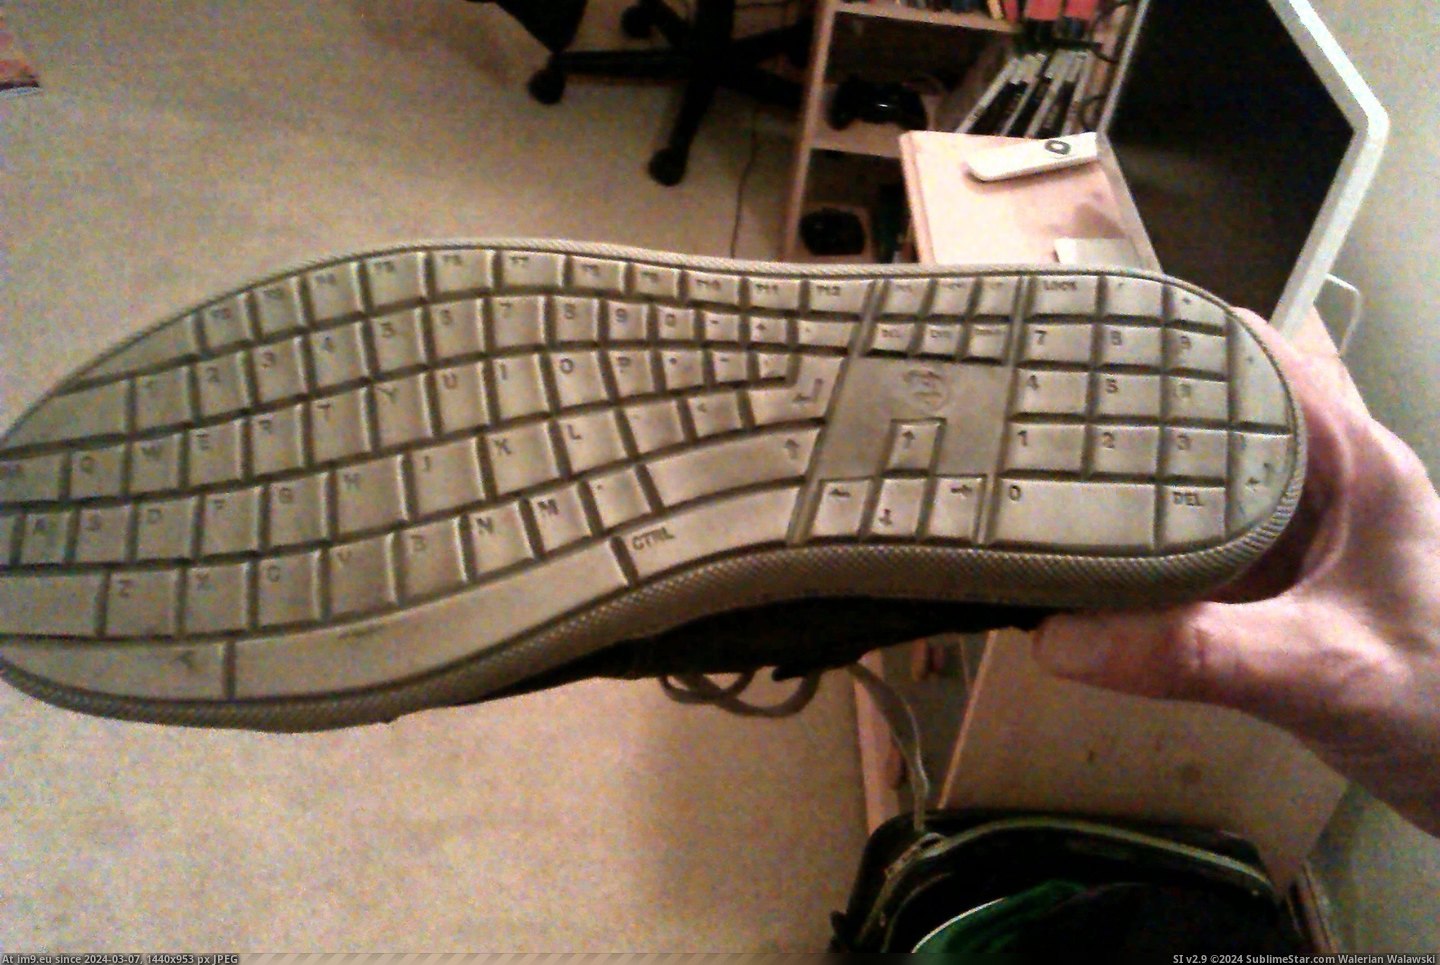 #Friends #Shoe #Keyboard #Bottom [Mildlyinteresting] The bottom of my friends shoe is a keyboard Pic. (Bild von album My r/MILDLYINTERESTING favs))